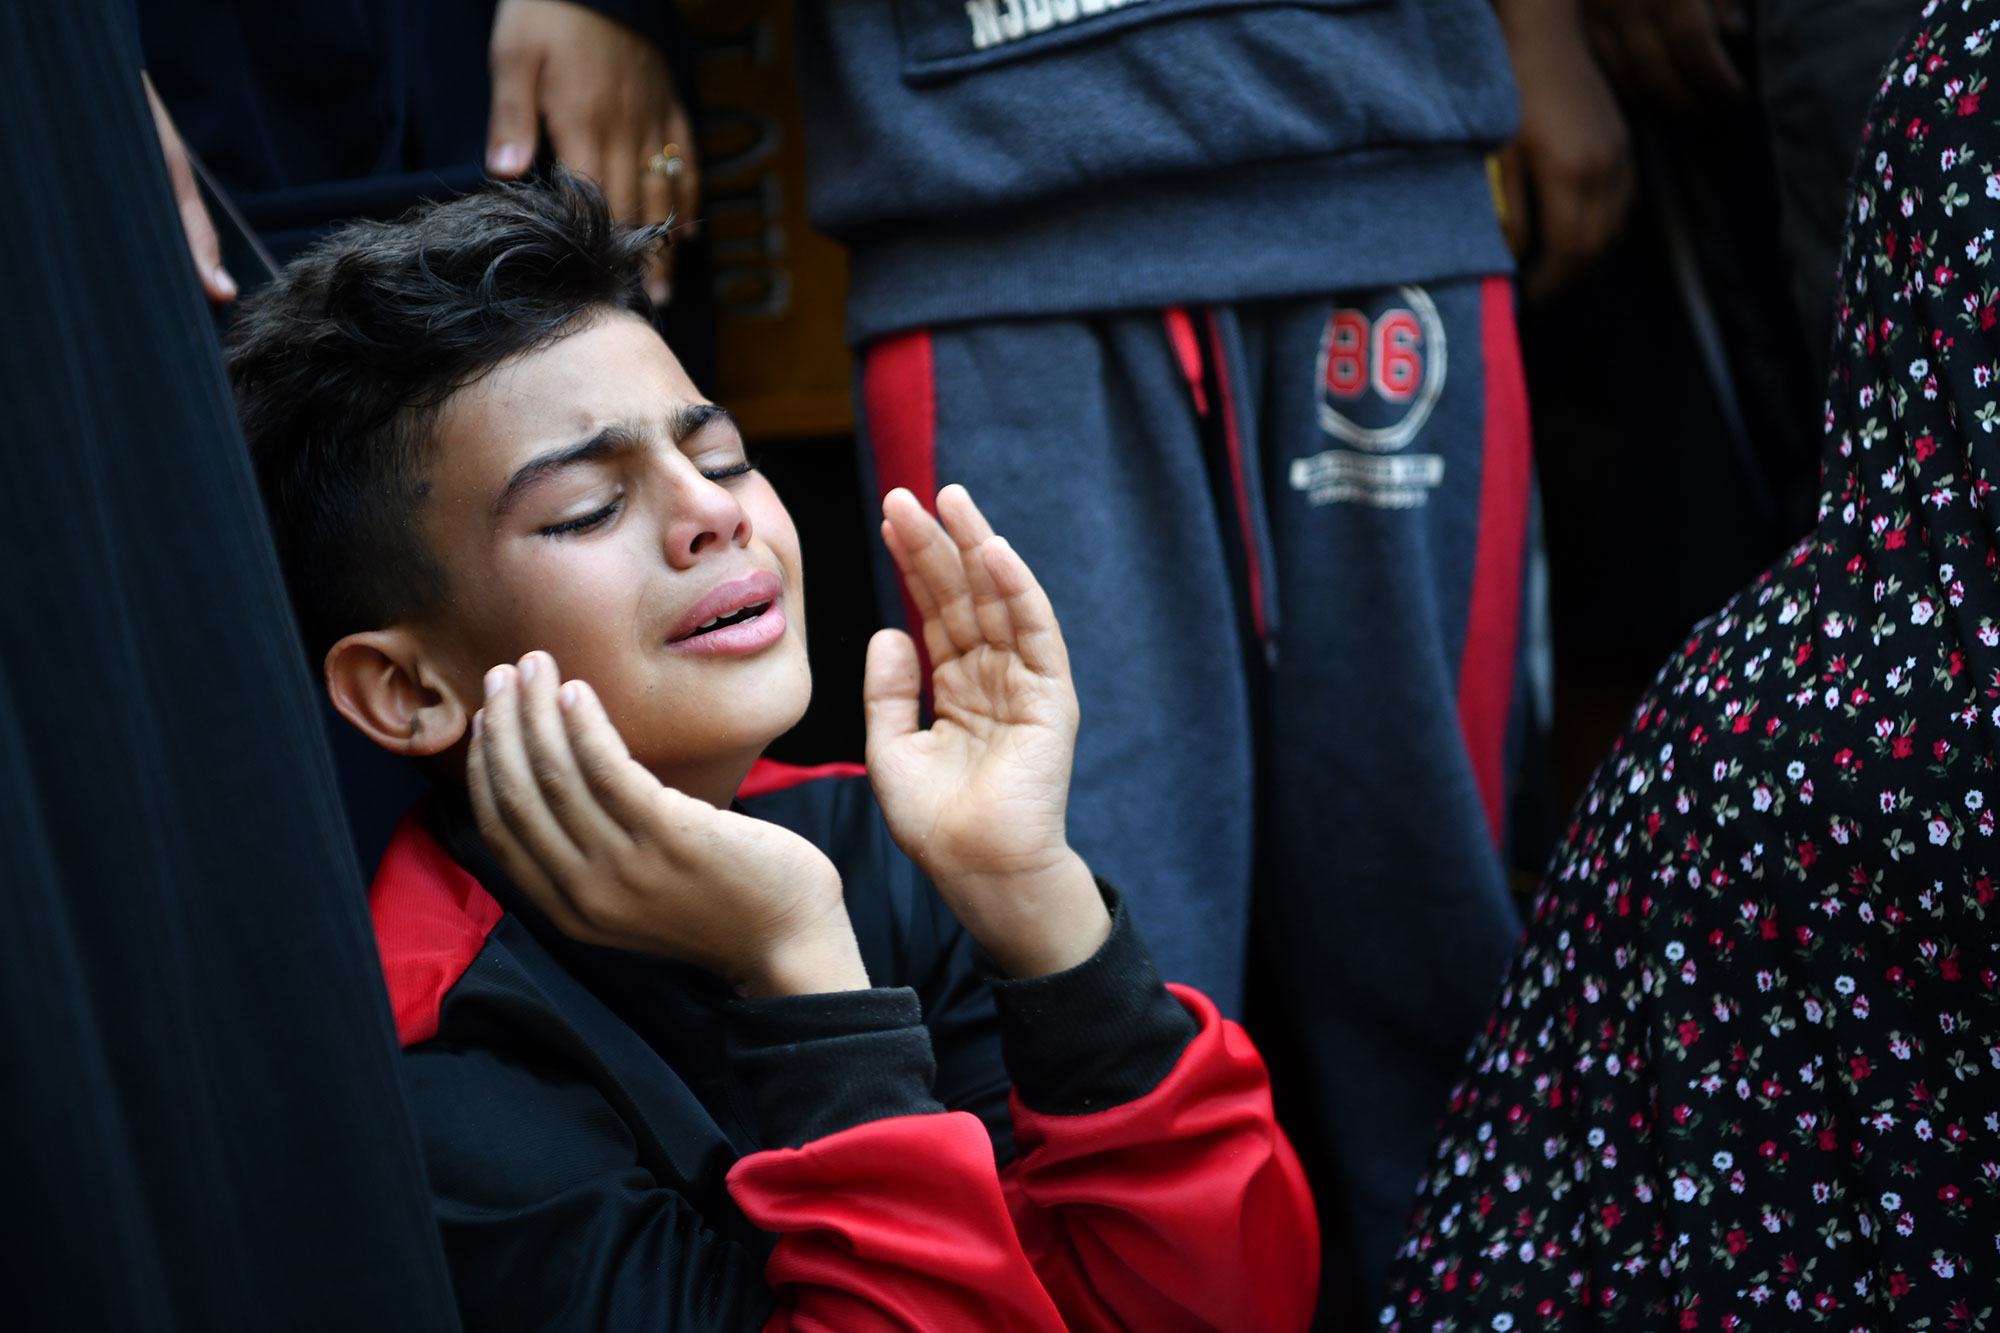 Gaza: Children flooding hospitals bearing ‘wounds of war’